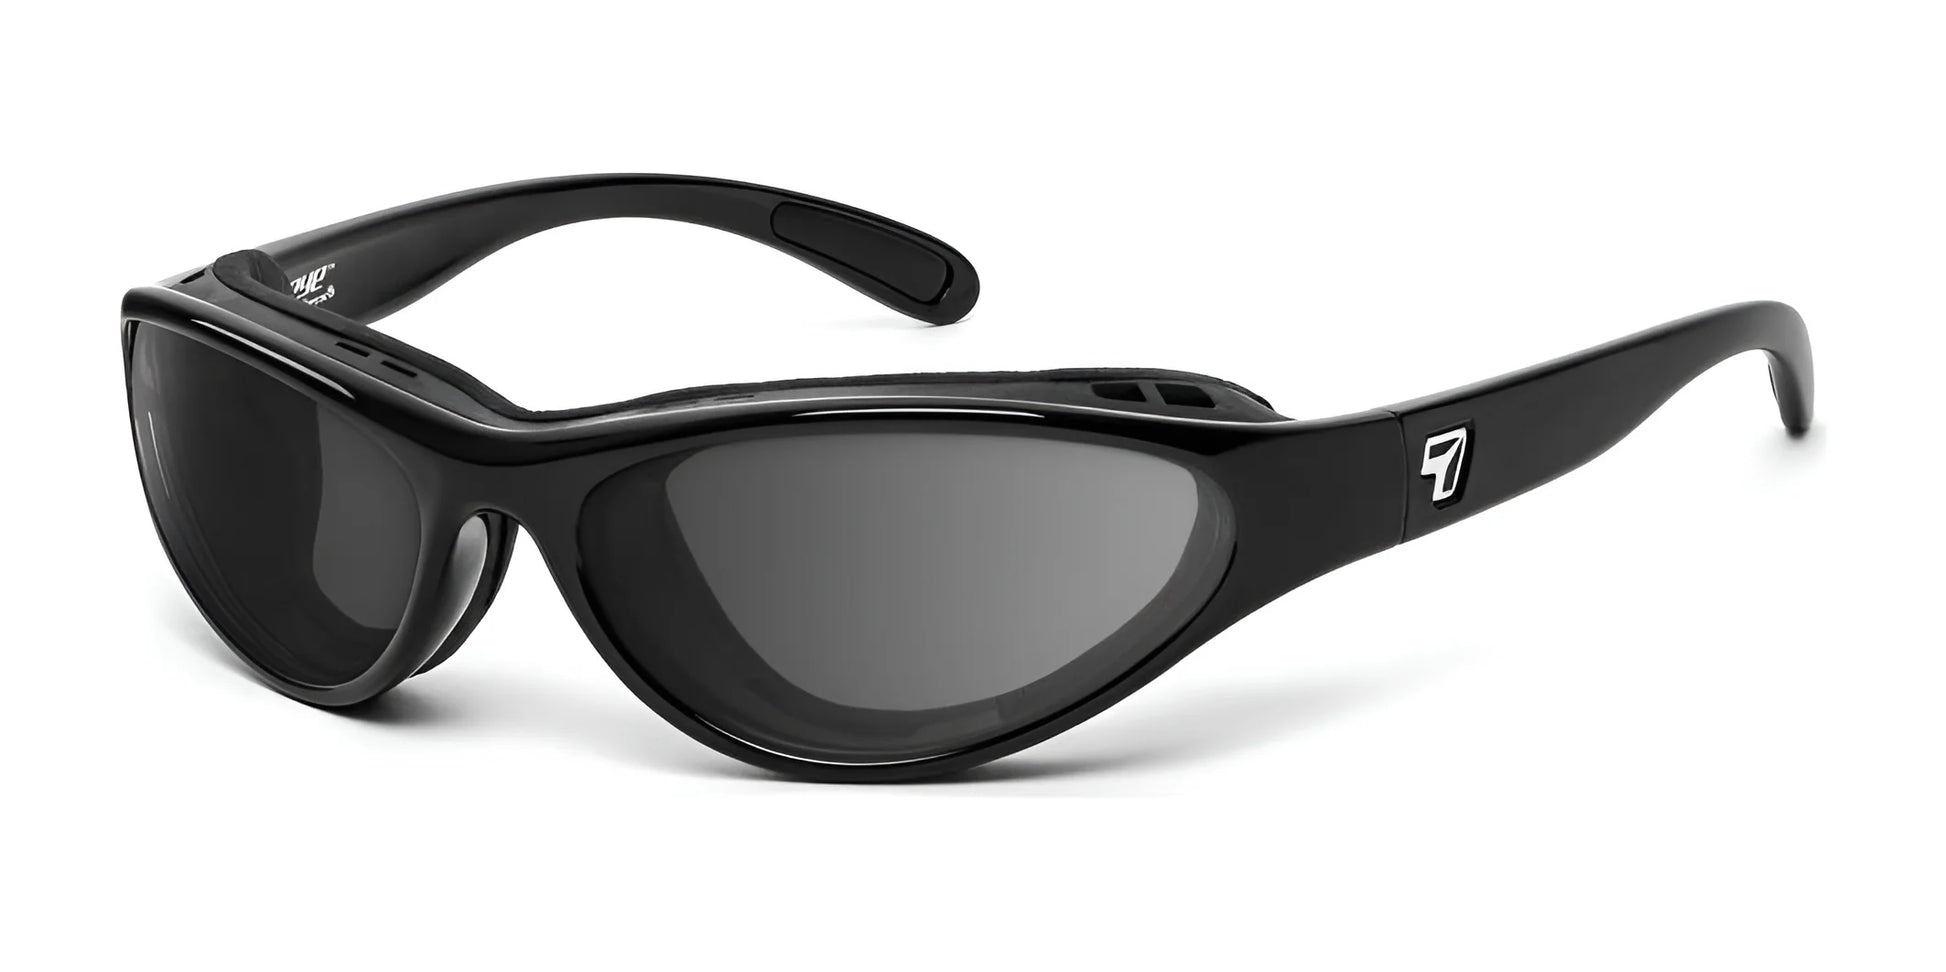 7eye Viento Sunglasses Glossy Black / DARKshift Photochromic - Clr to DARK Gray